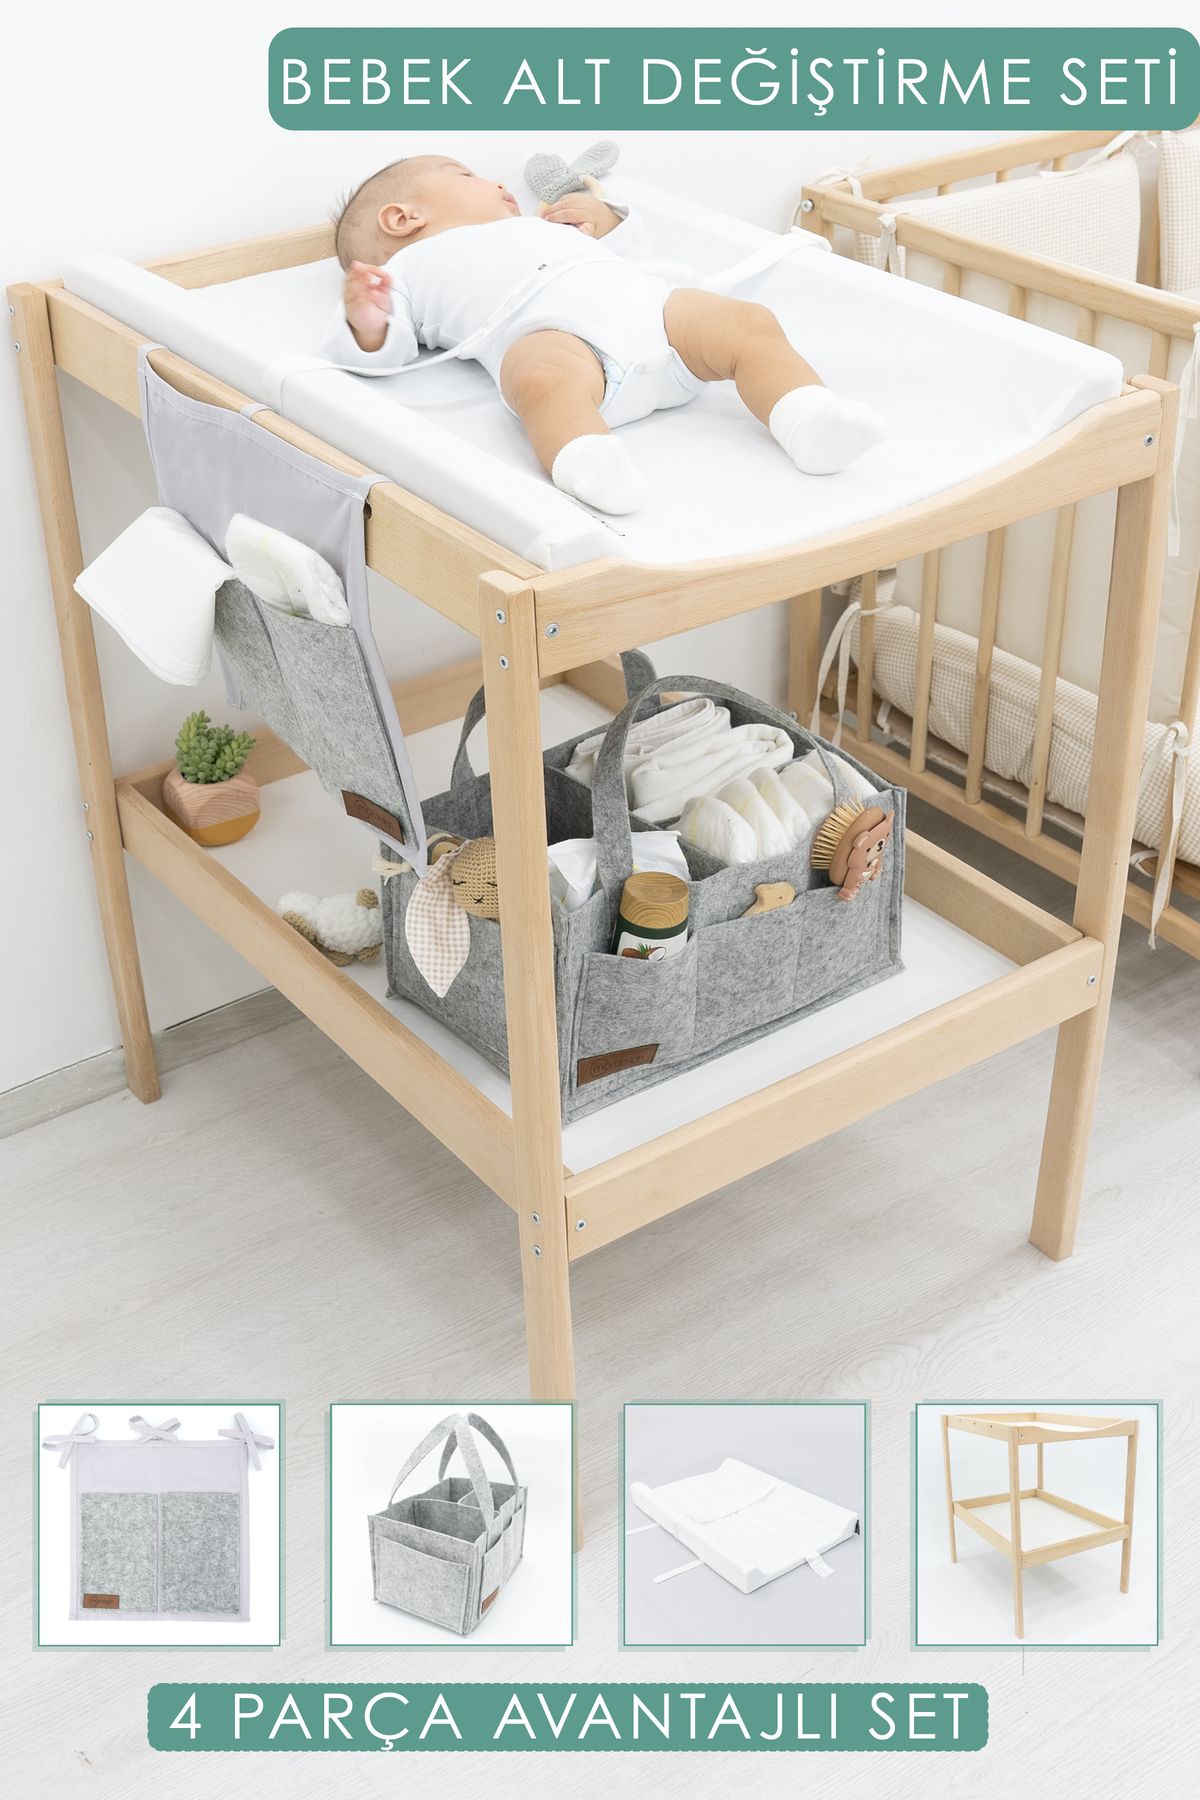 mordesign Bebek 4 Parça Set Bebek Alt Değiştirme Masası Ve Pedi, Bağlamalı Ve Sepet Keçe Organizer